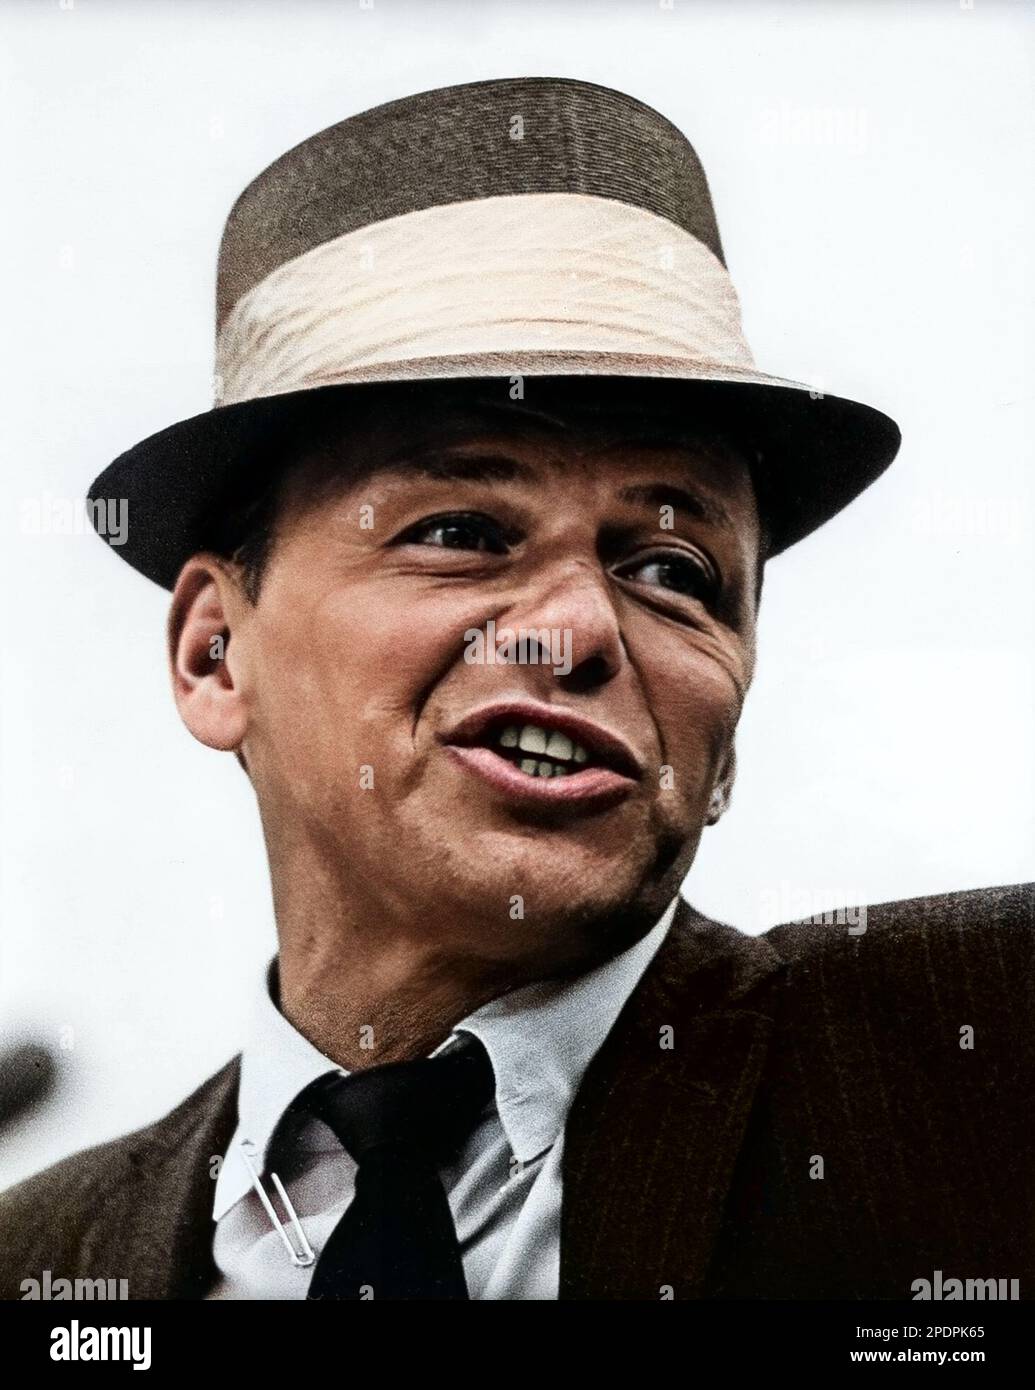 Frank Sinatra photo publicitaire colorisée Vintage c 1960s Banque D'Images